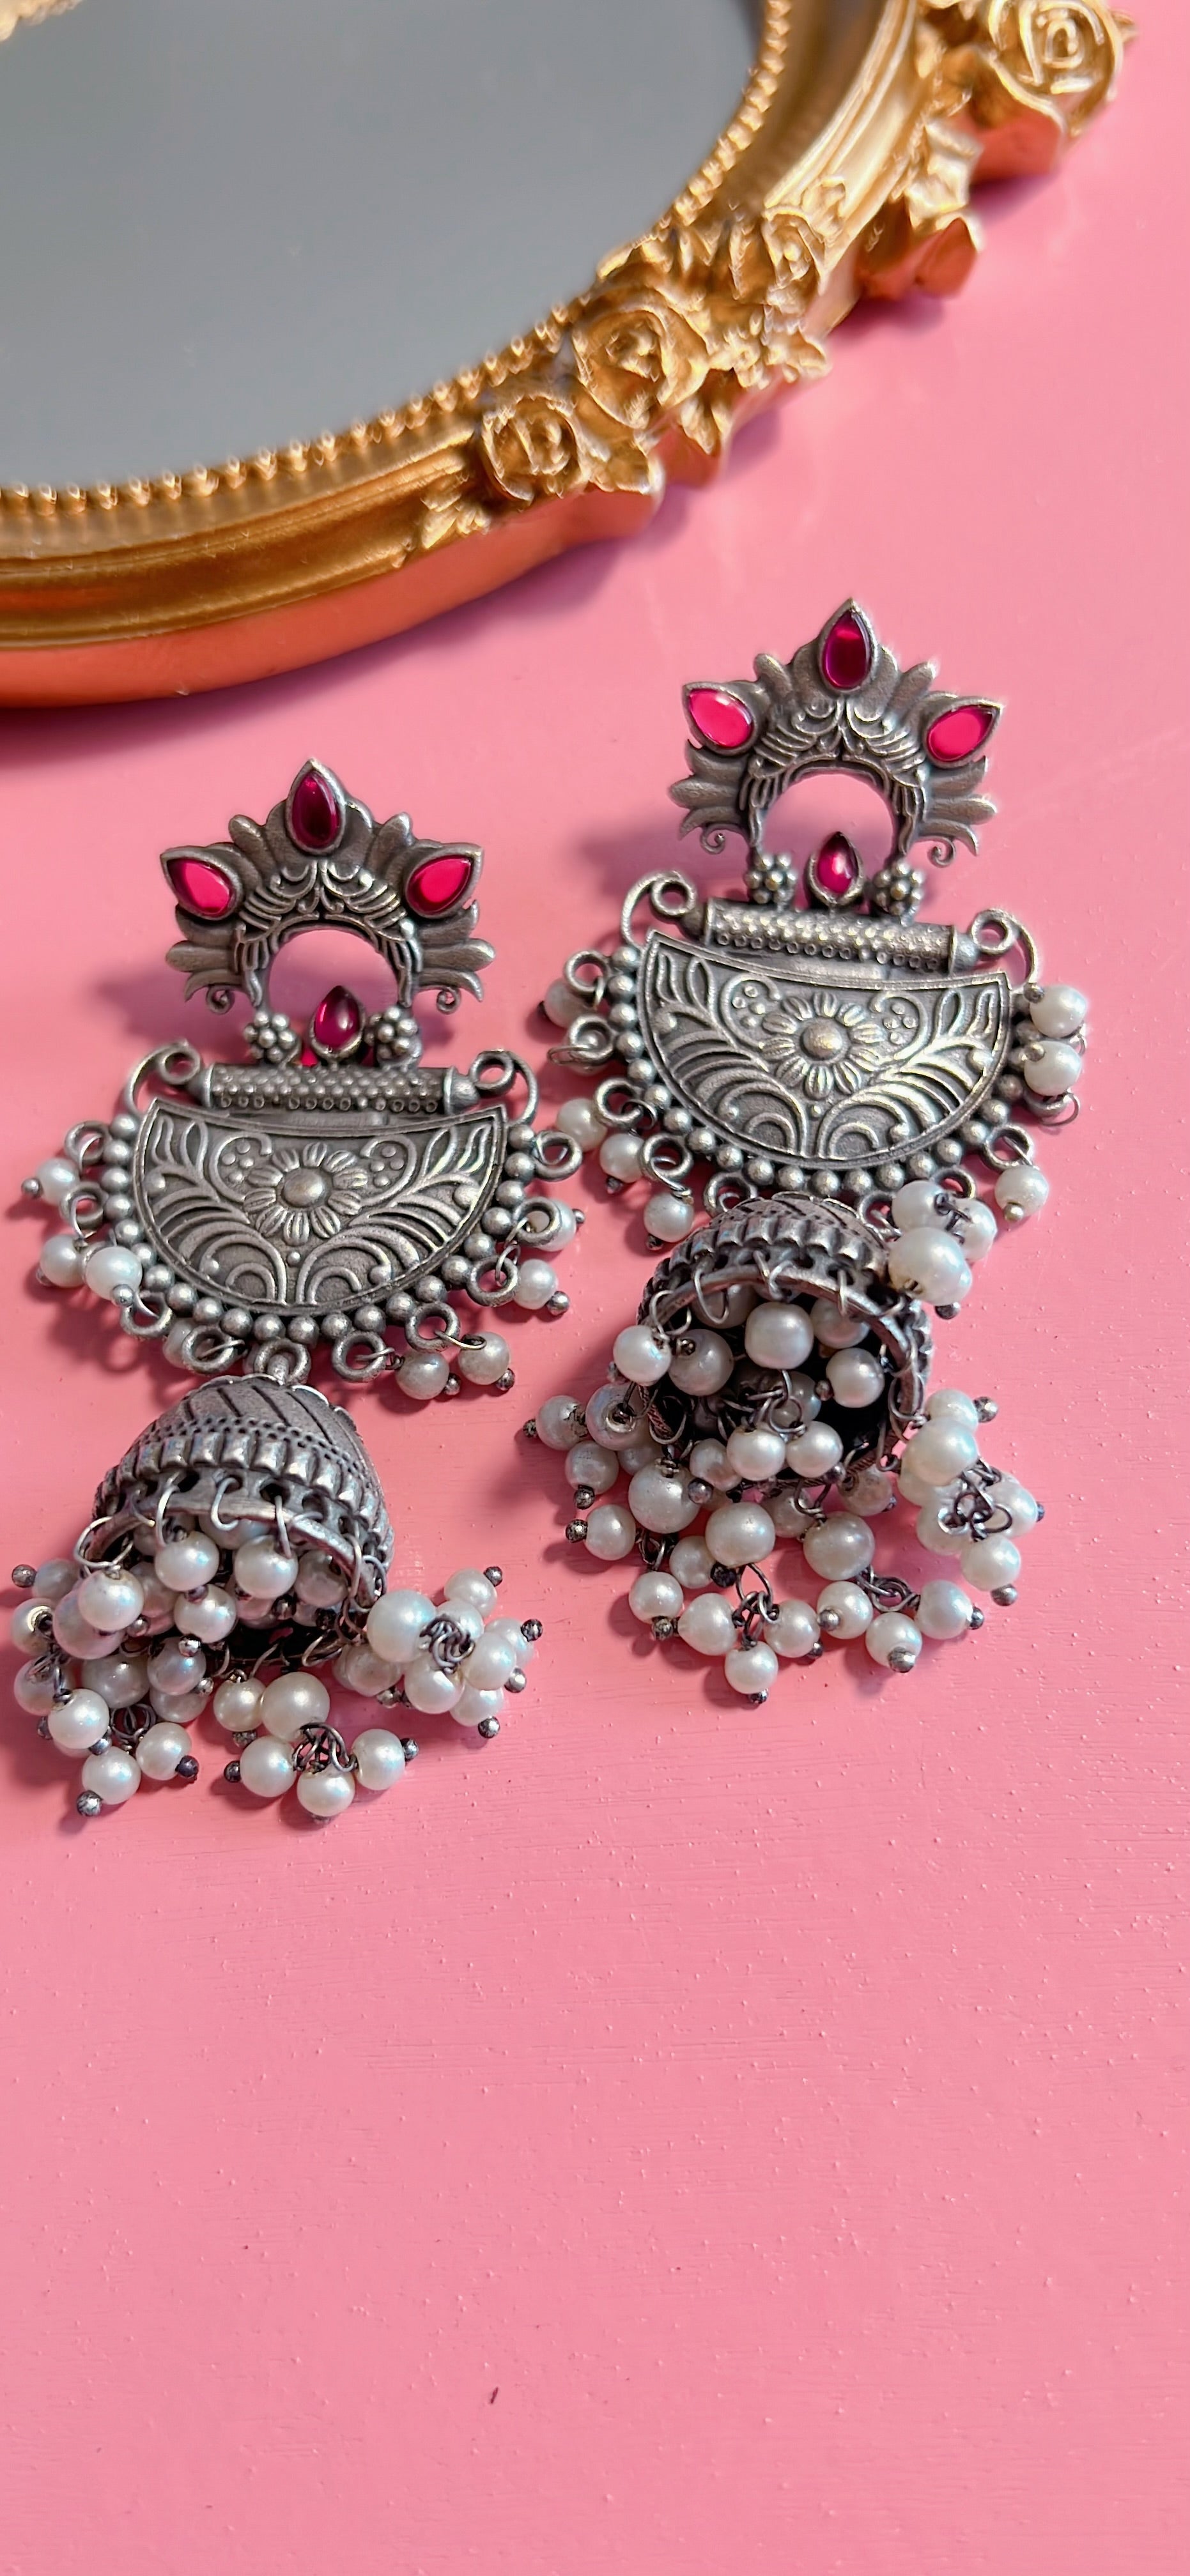 Oxidized silver earrings